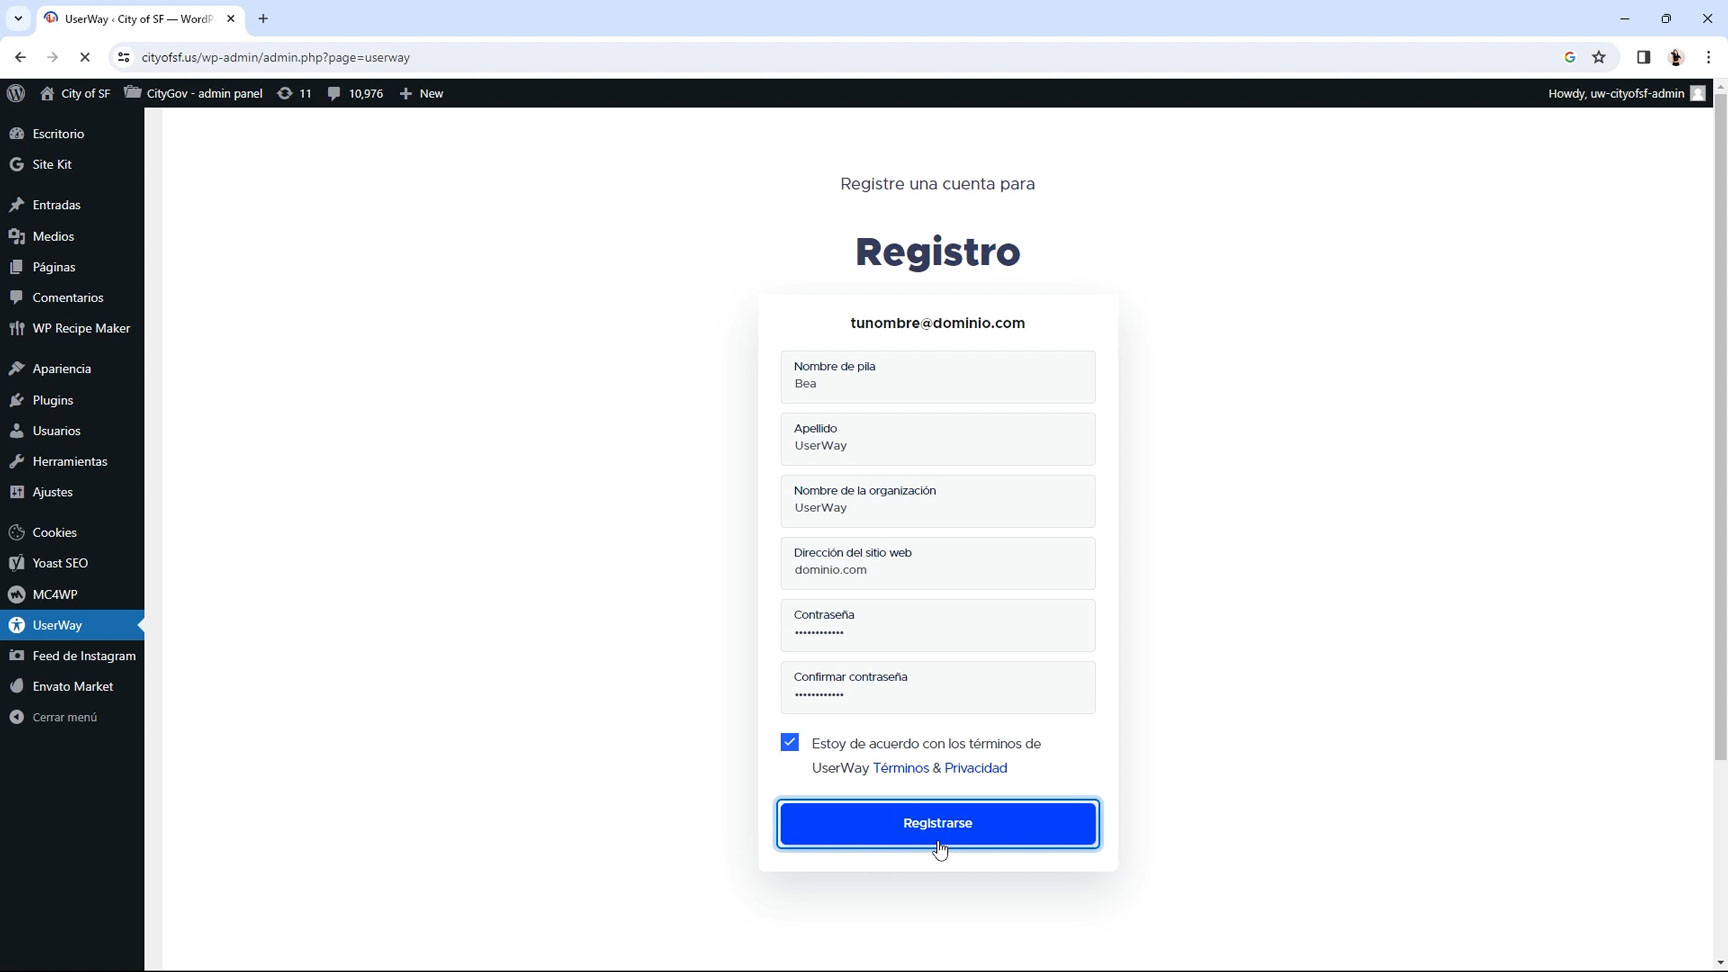 Segundo paso, completar el registro y hacer click en registrarse